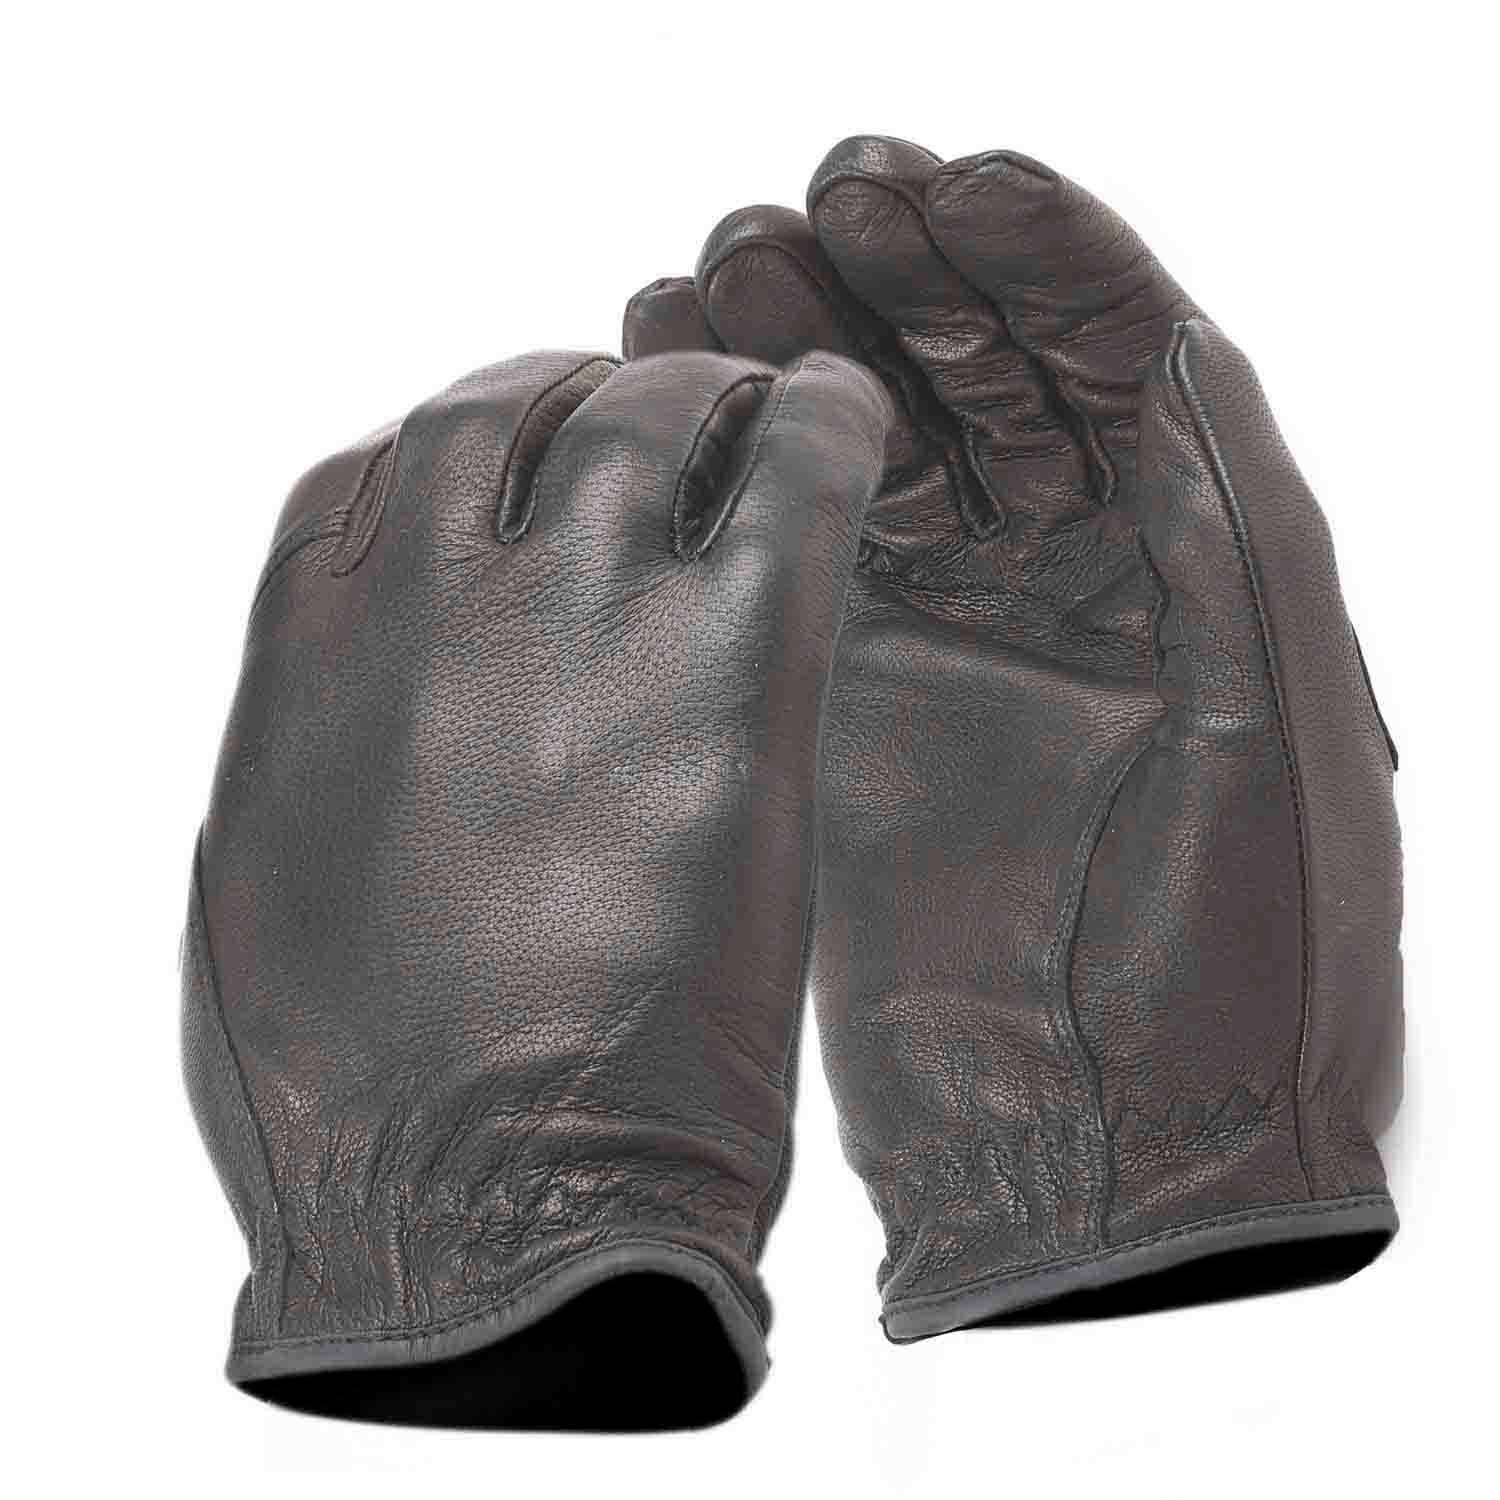 HWI Gear Spectra-lined Duty Gloves